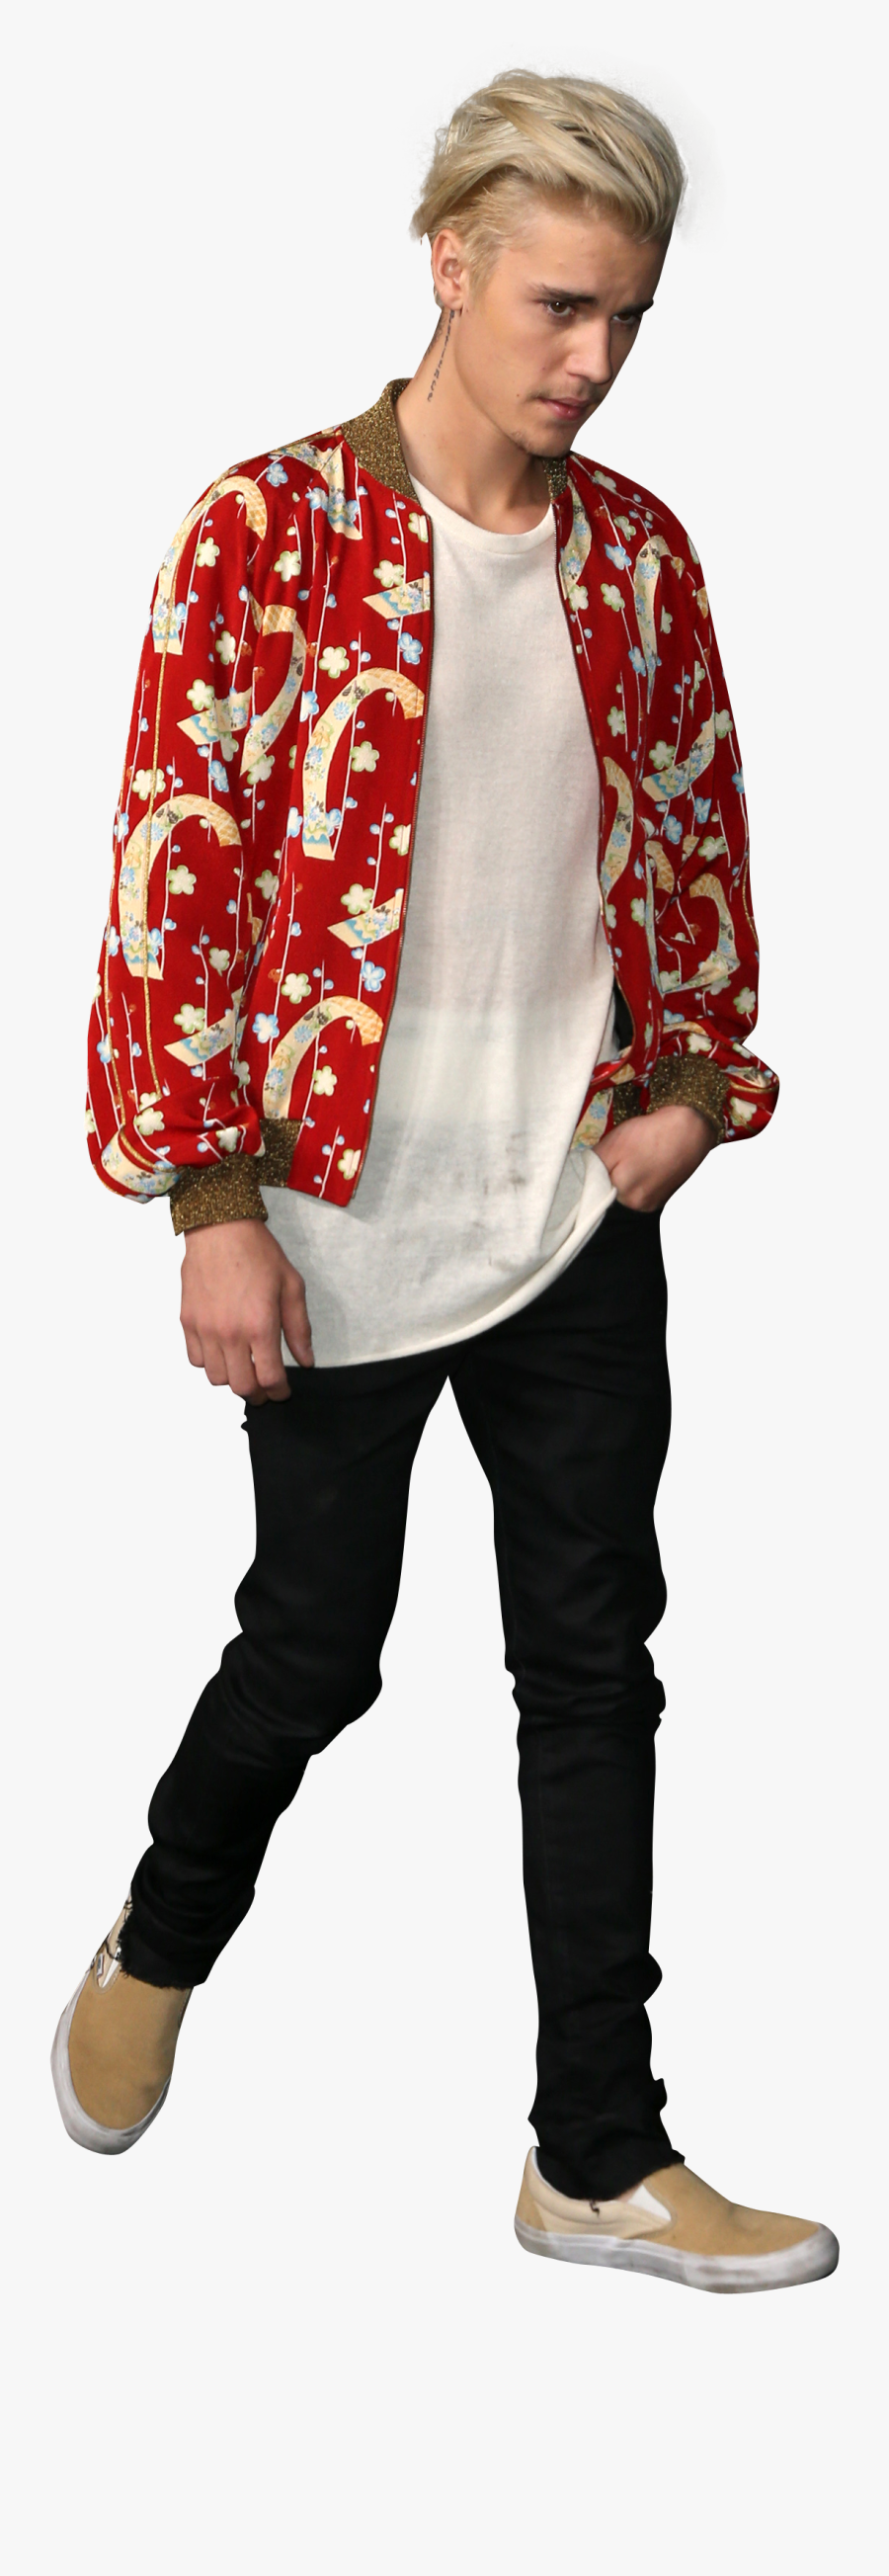 Transparent Justin Bieber Clipart - Justin Bieber Red Shirt, Transparent Clipart